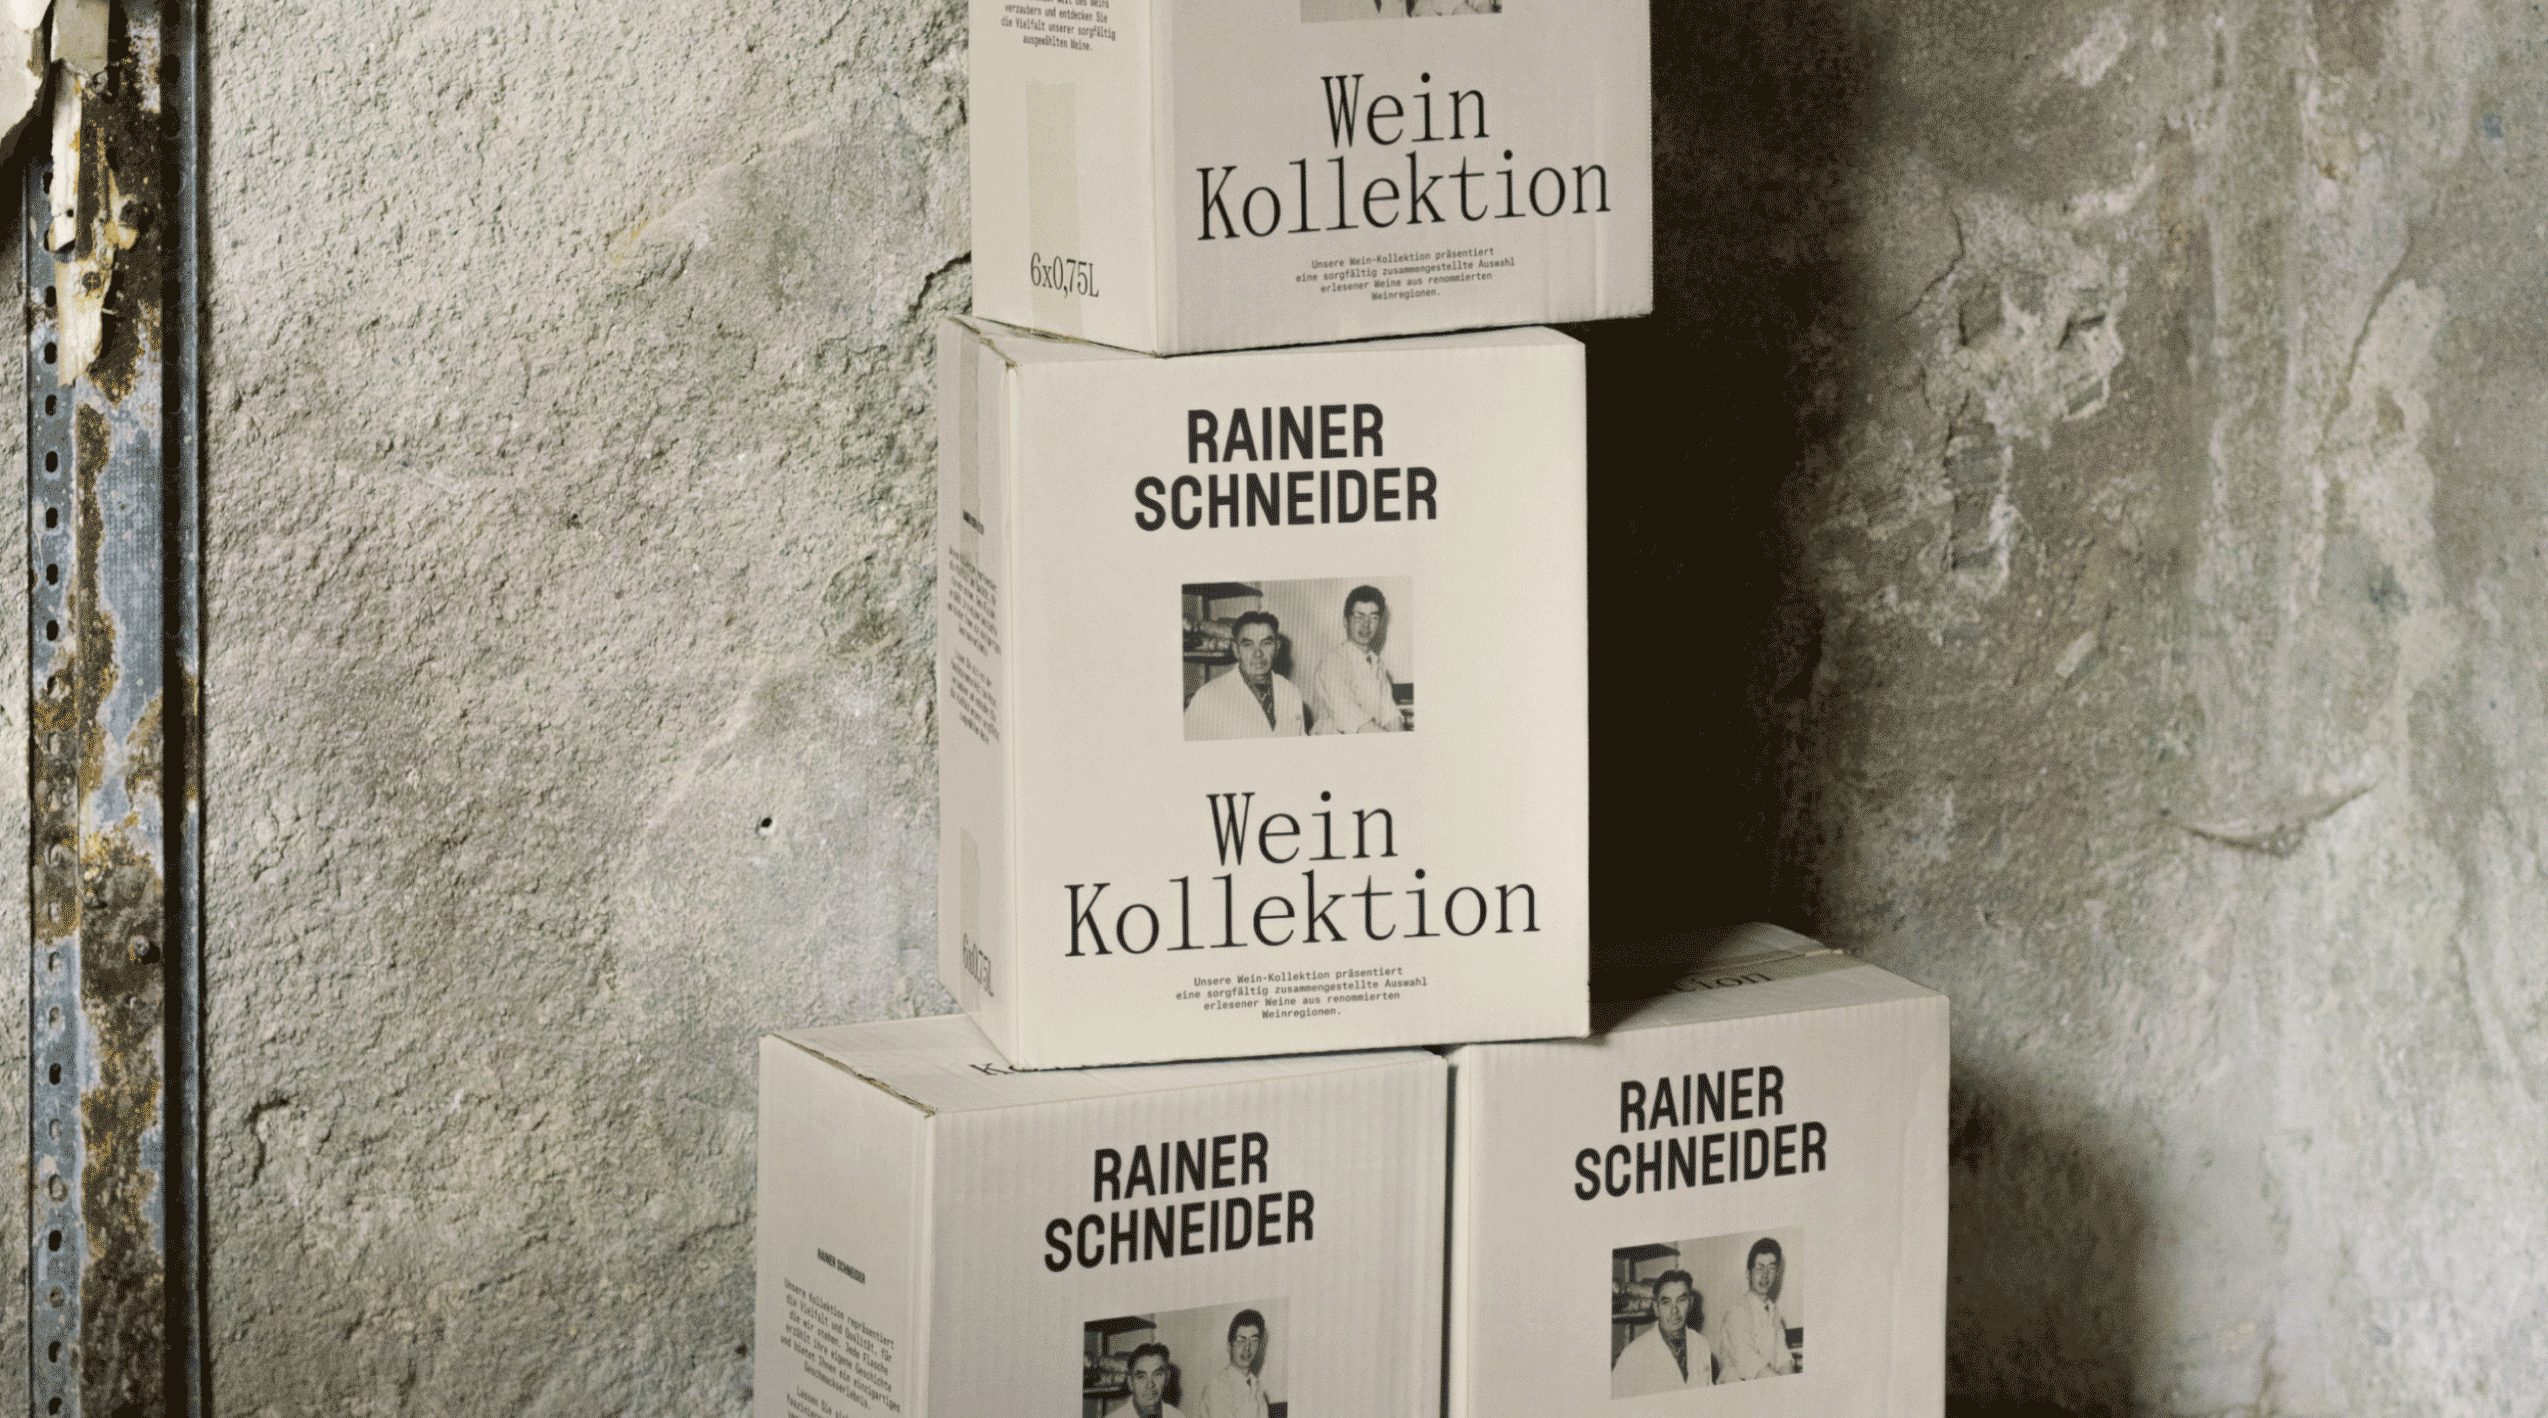 Rainer-Schneider-box-of-wine